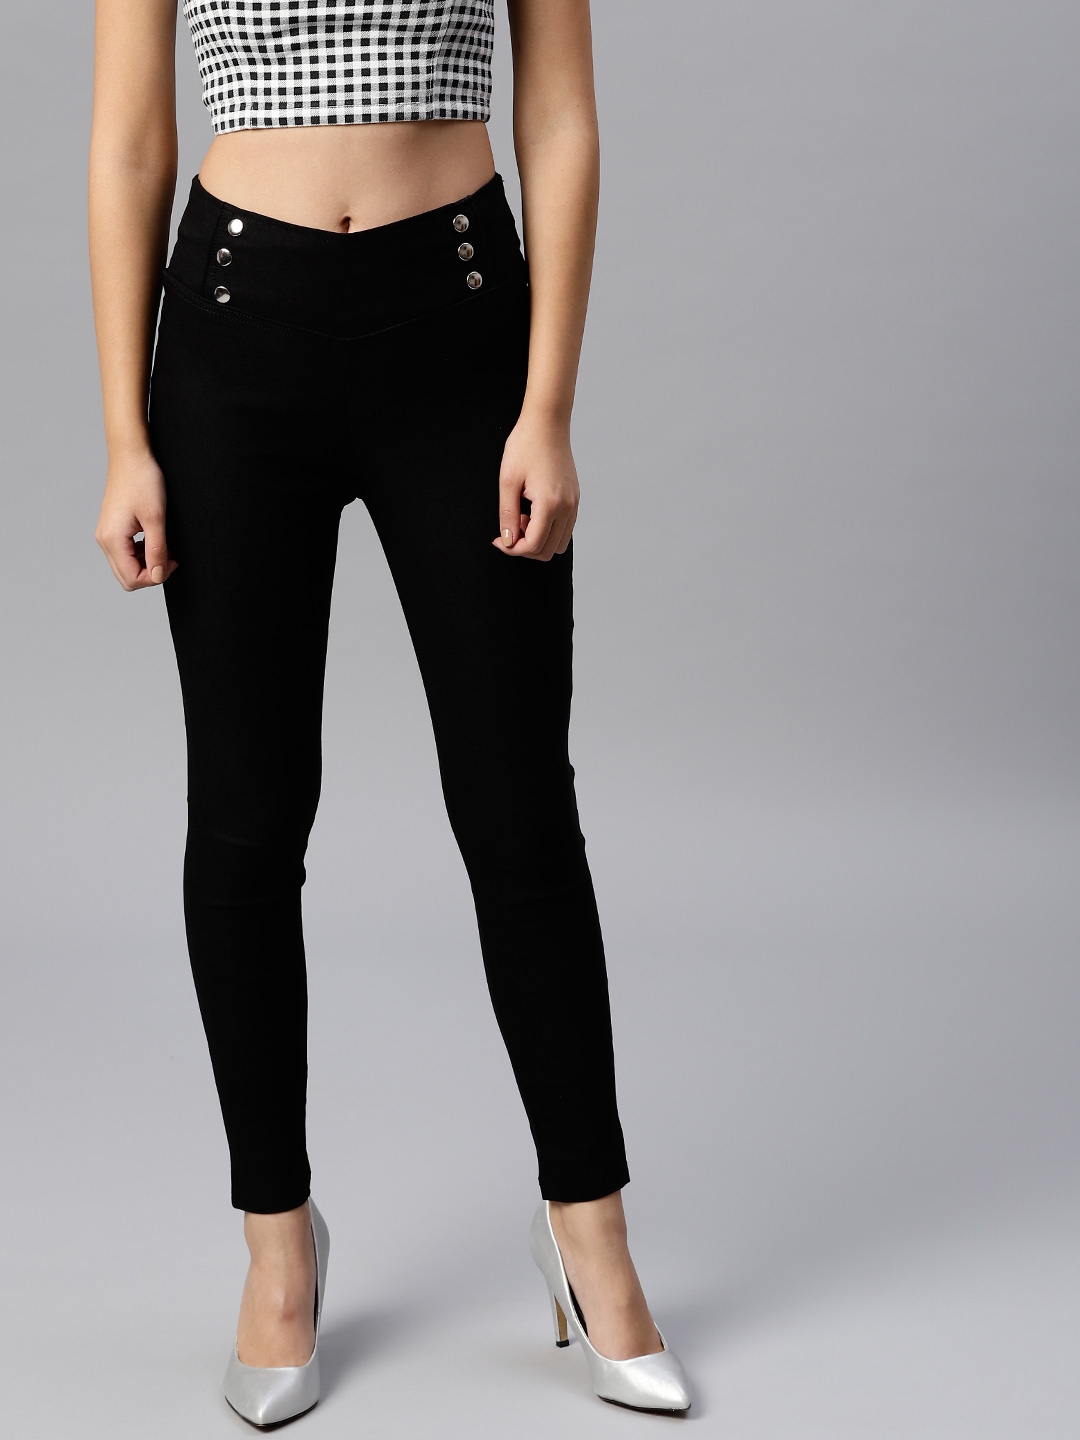 Buy Tulsattva Women Black Slim Fit Solid Treggings - Jeggings for